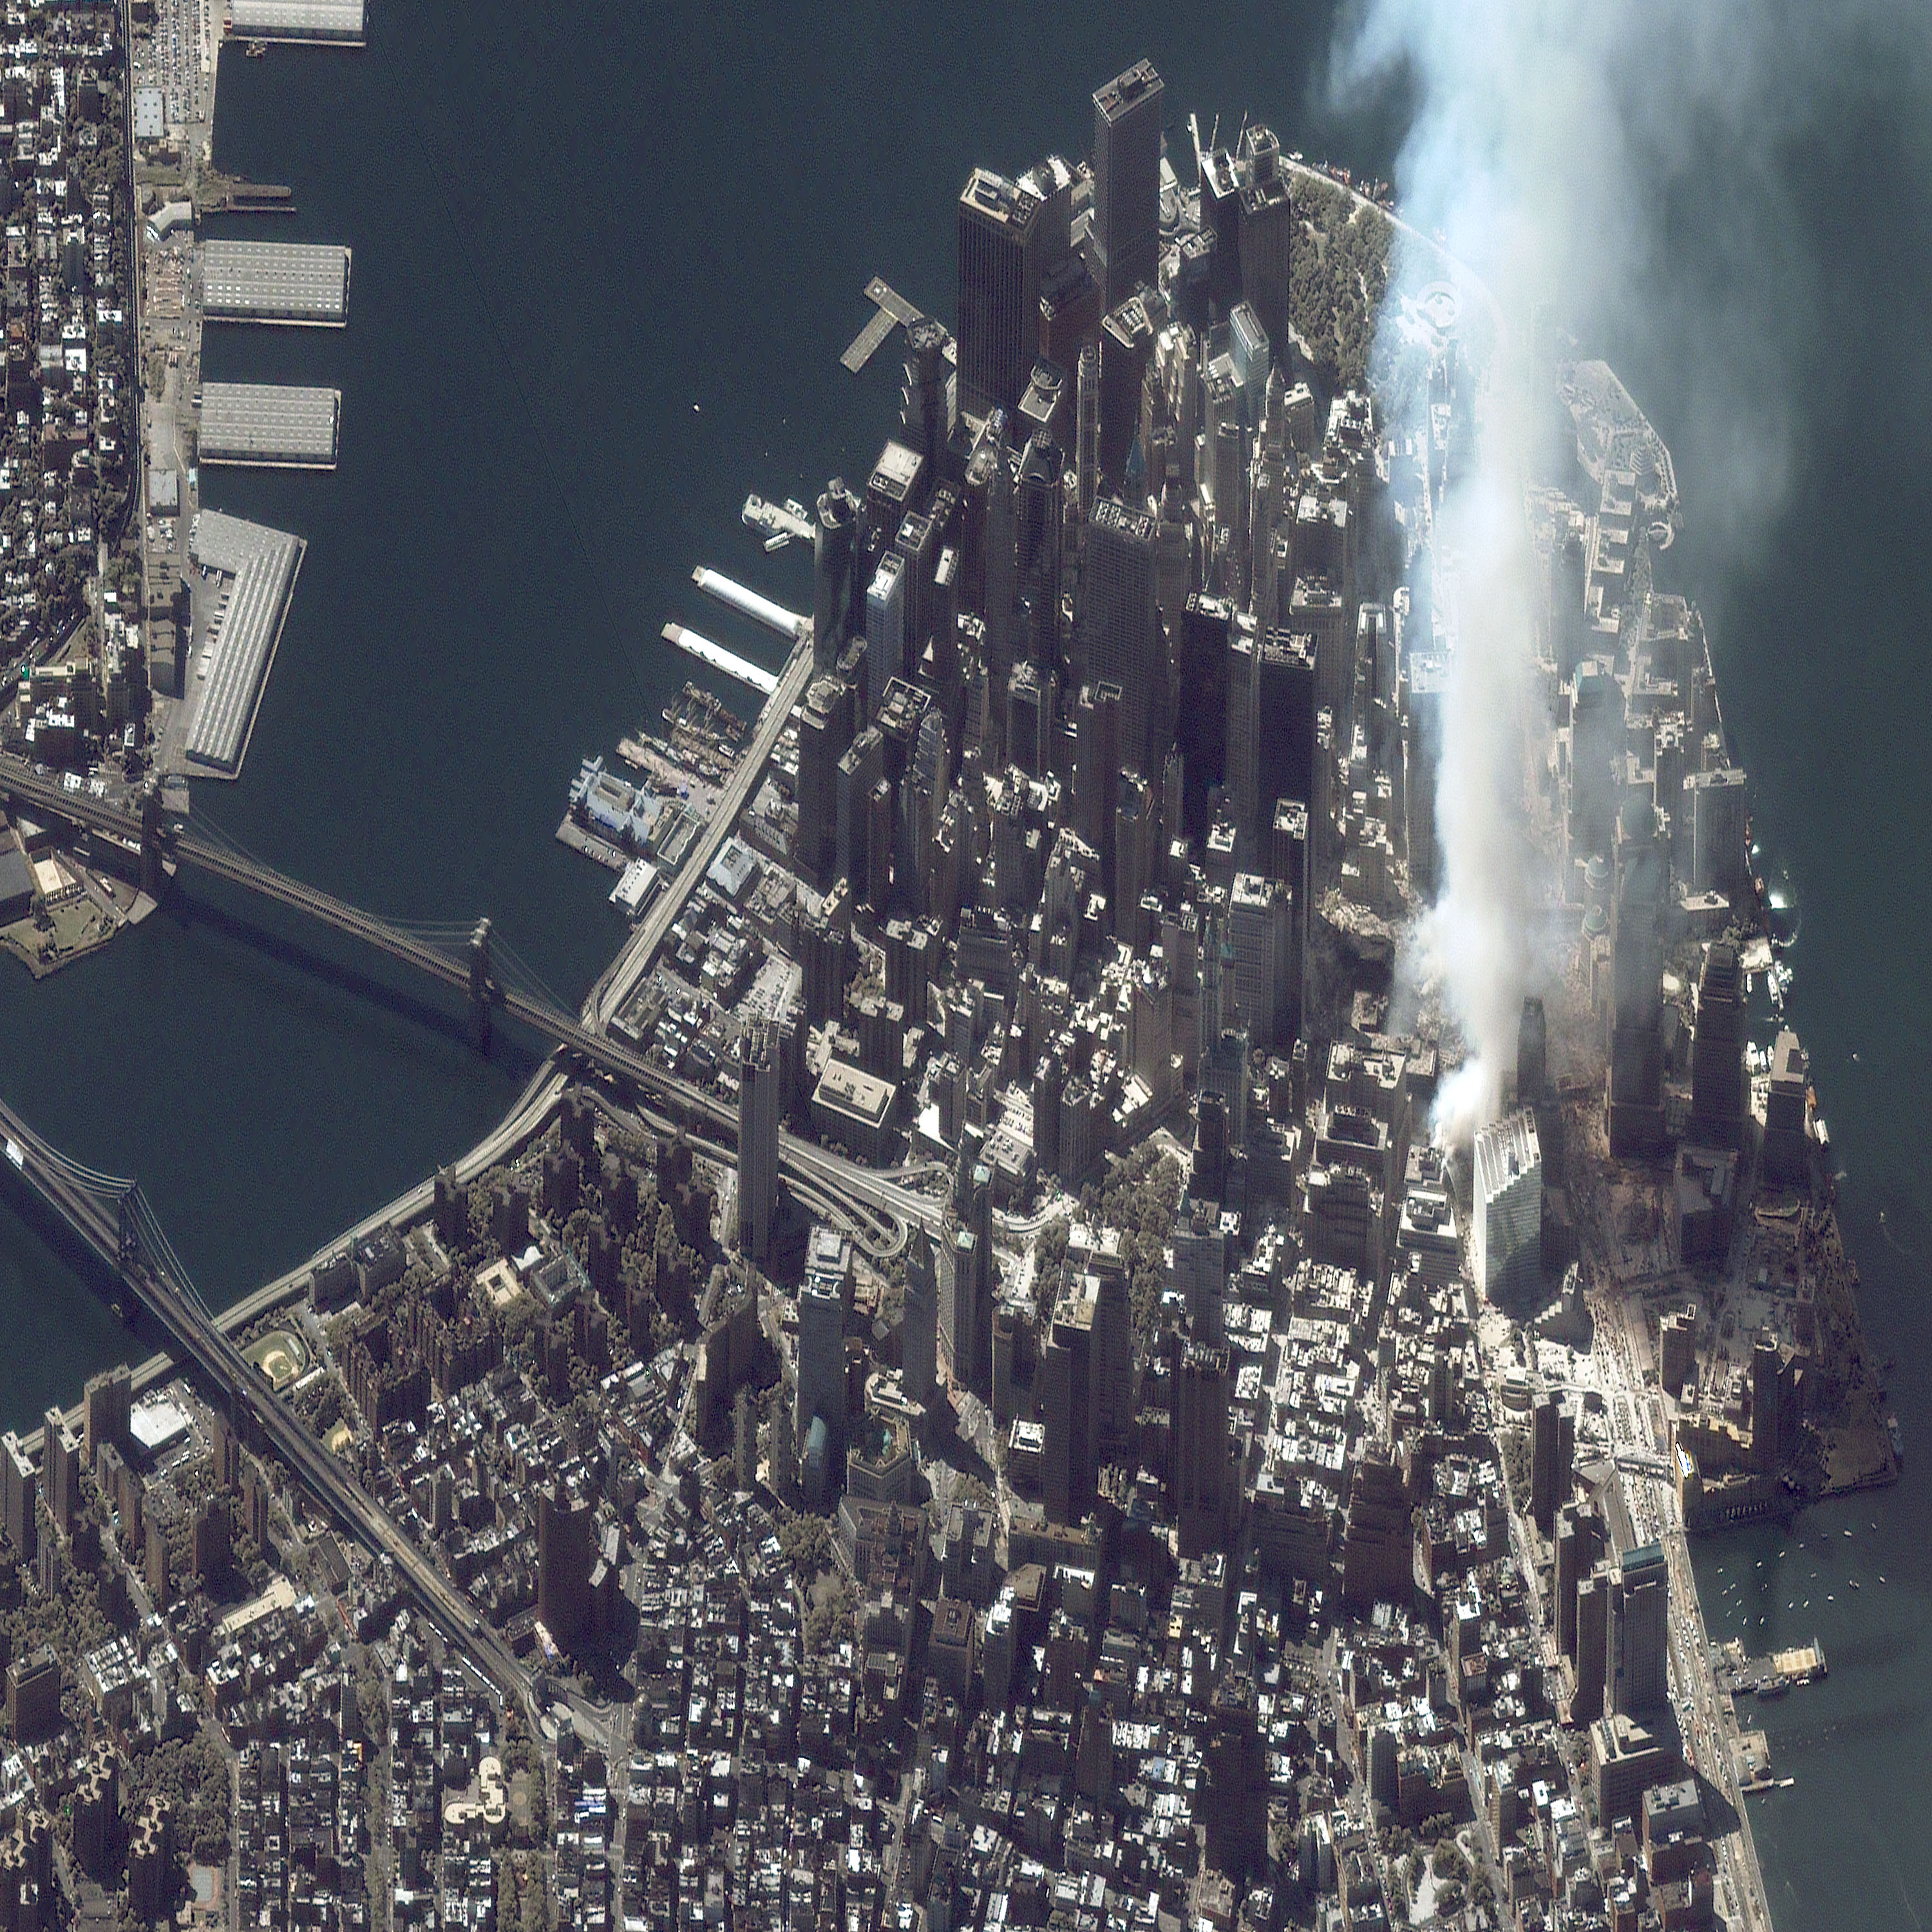 Фотография Манхэттана Нью Йорк, сделанная сразу после атаки террористов 11 сентября 2001 года.